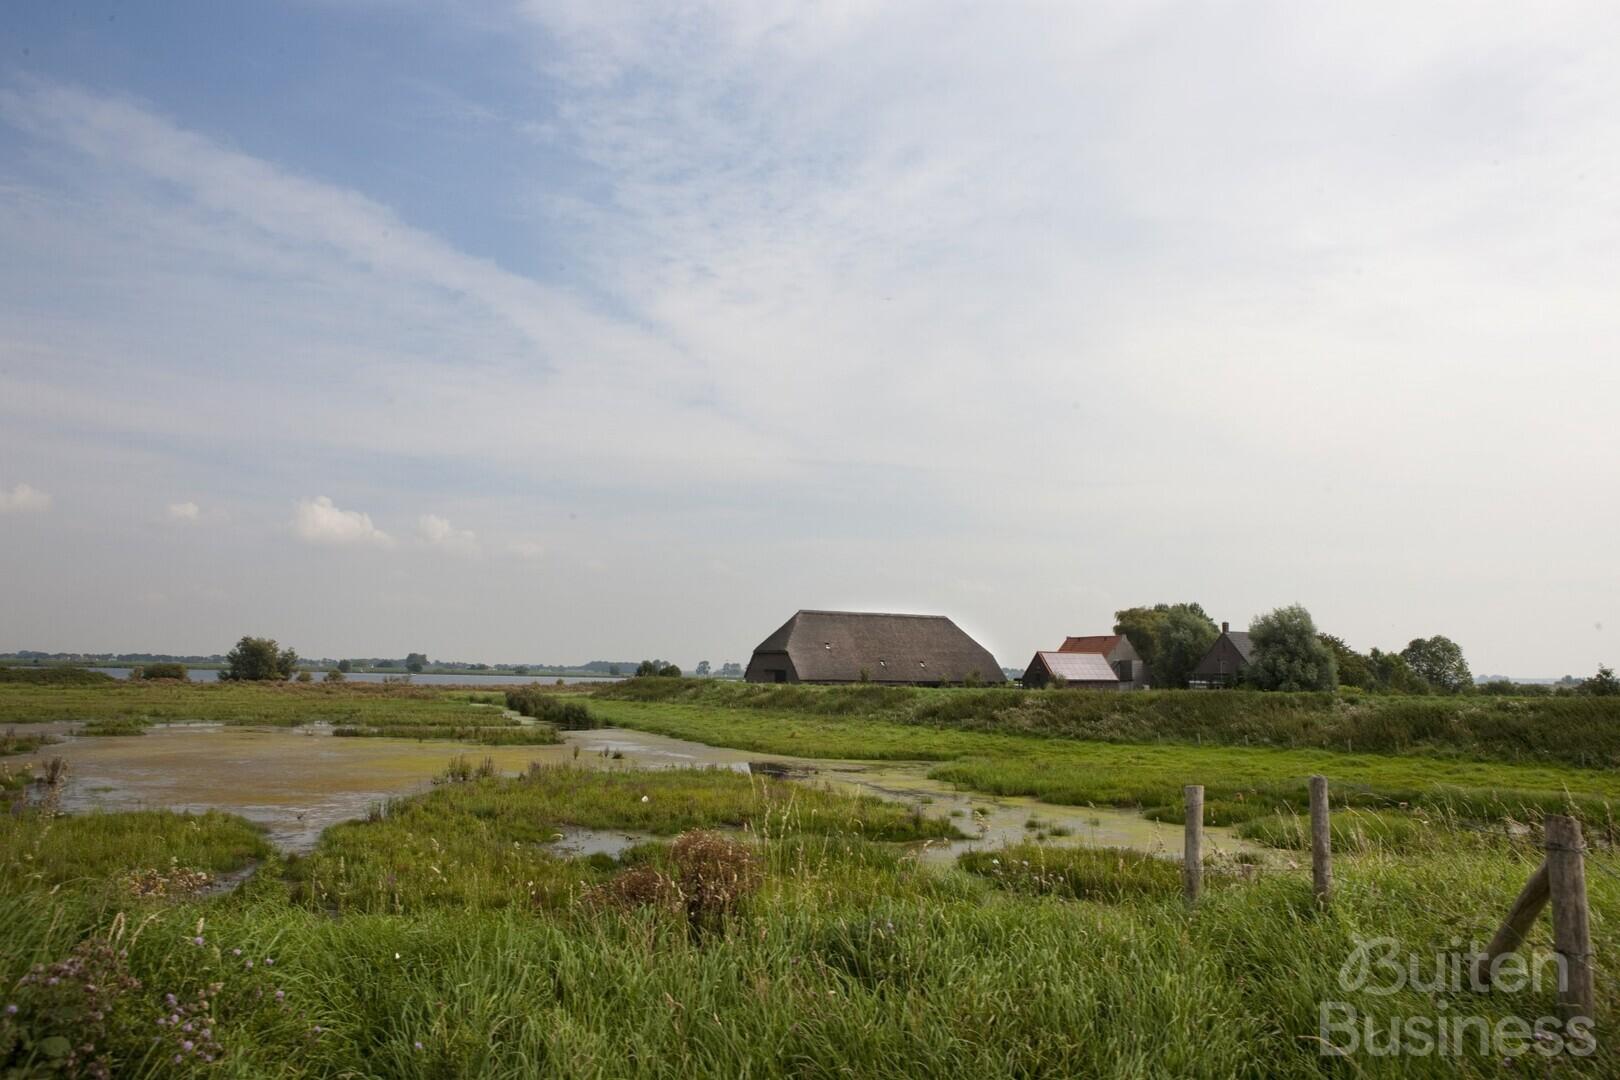 Vergaderen bij Natuurmonumenten: Bezoekerscentrum Tiengemeten in Zuid-Beijerland, Zuid-Holland via BuitenBusiness